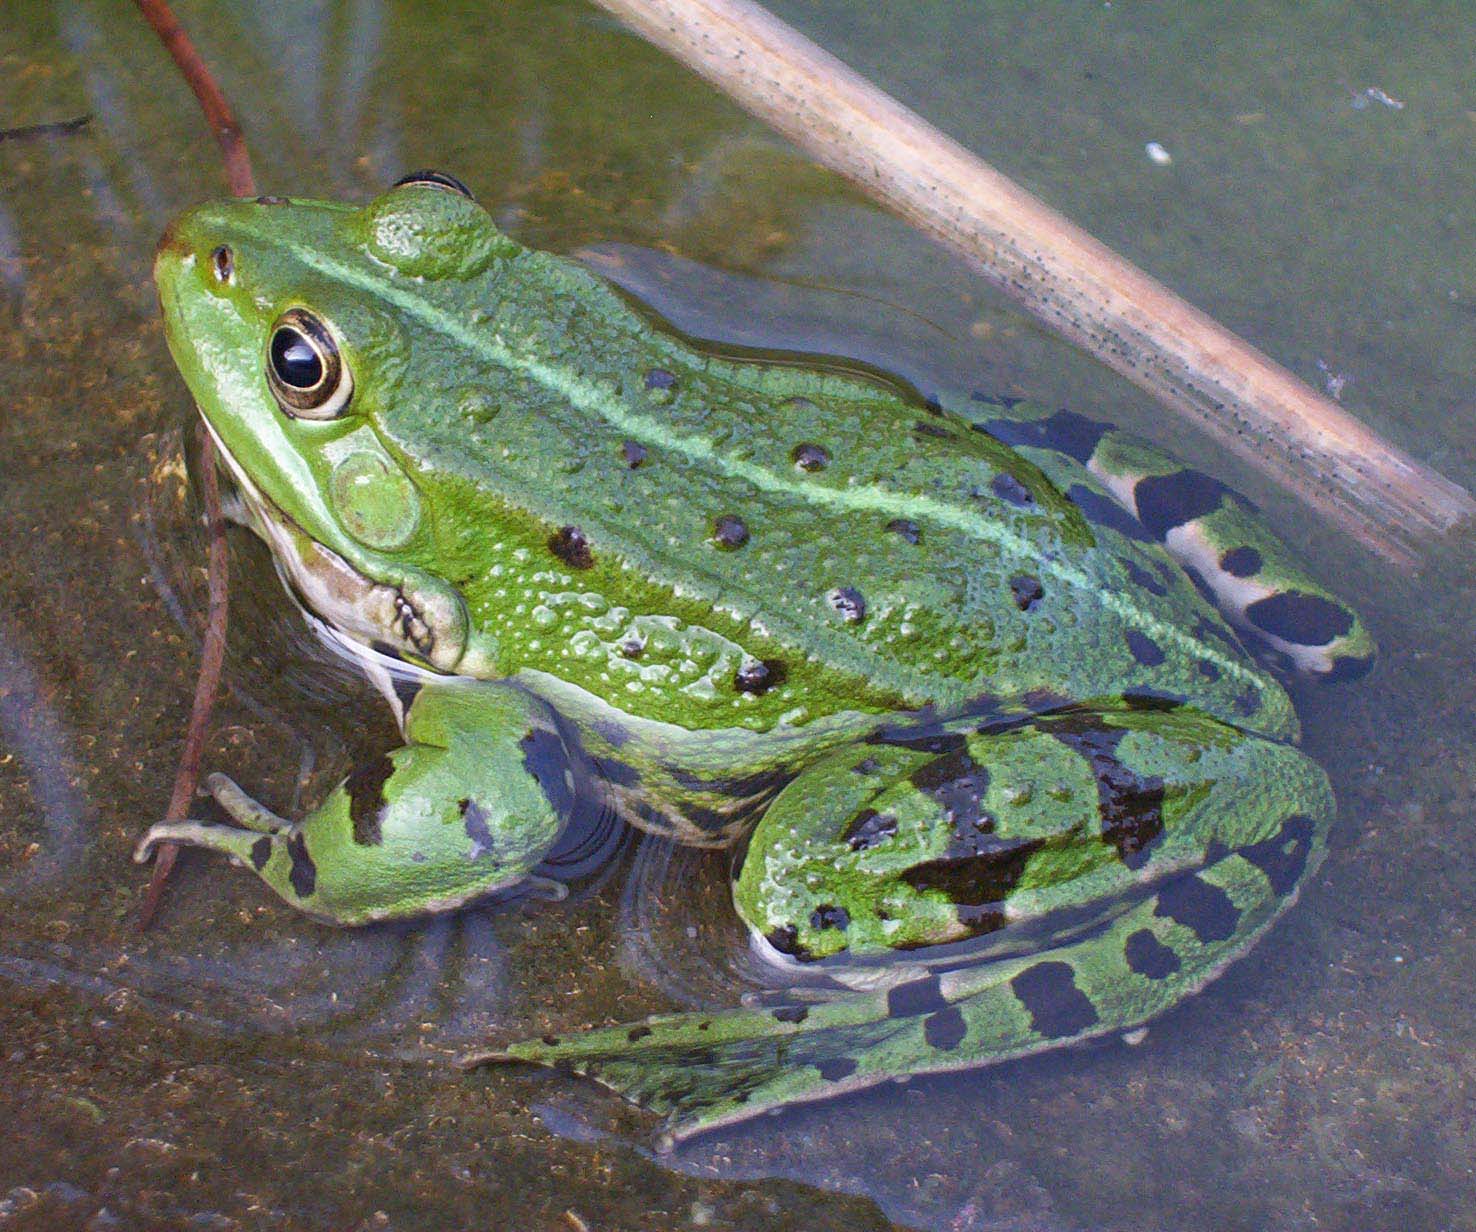 Edible Frog (Rana esculenta) ) - Wiki; Image ONLY